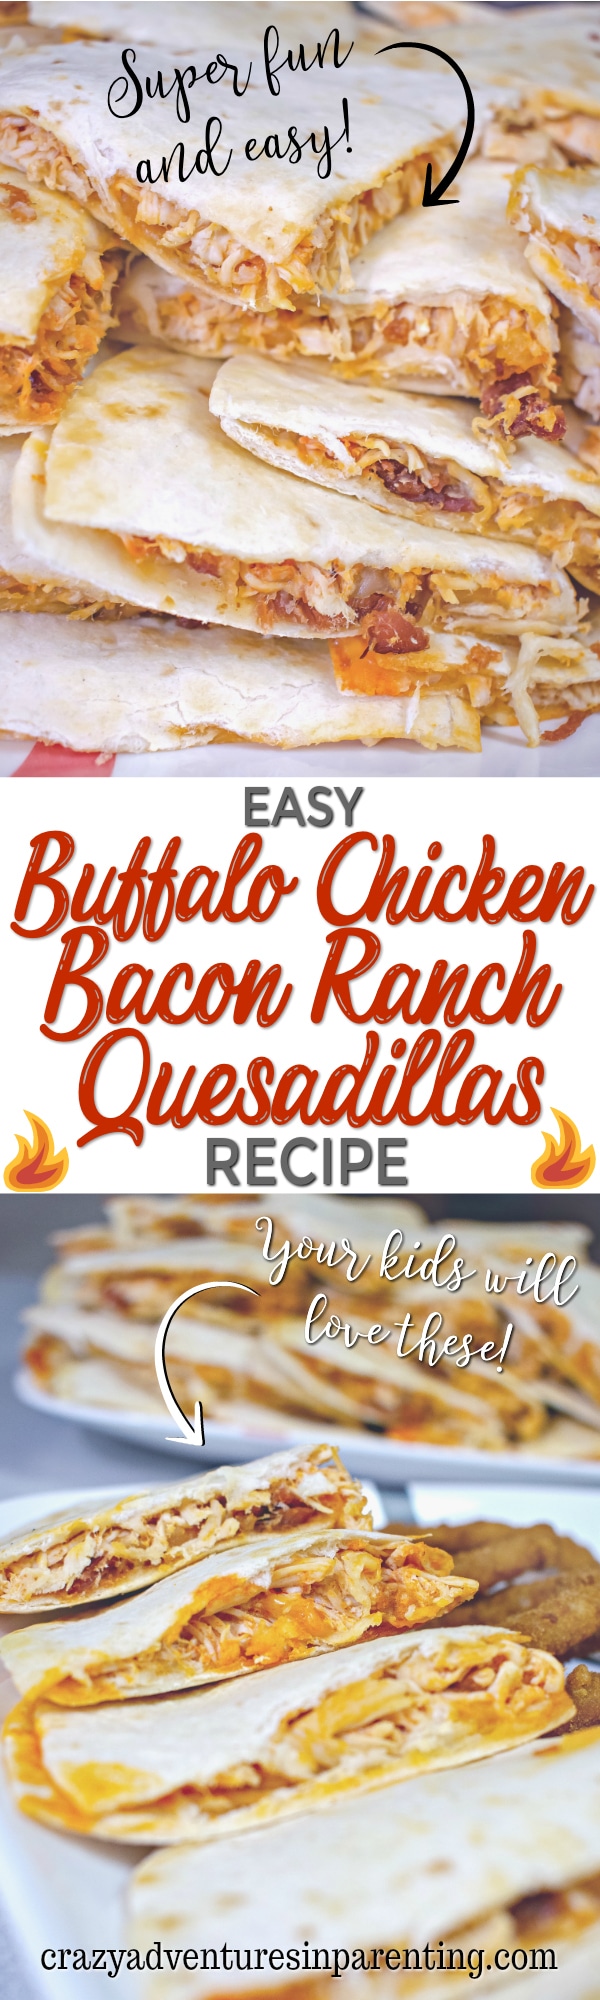 Easy Buffalo Chicken Bacon Ranch Quesadillas Recipe